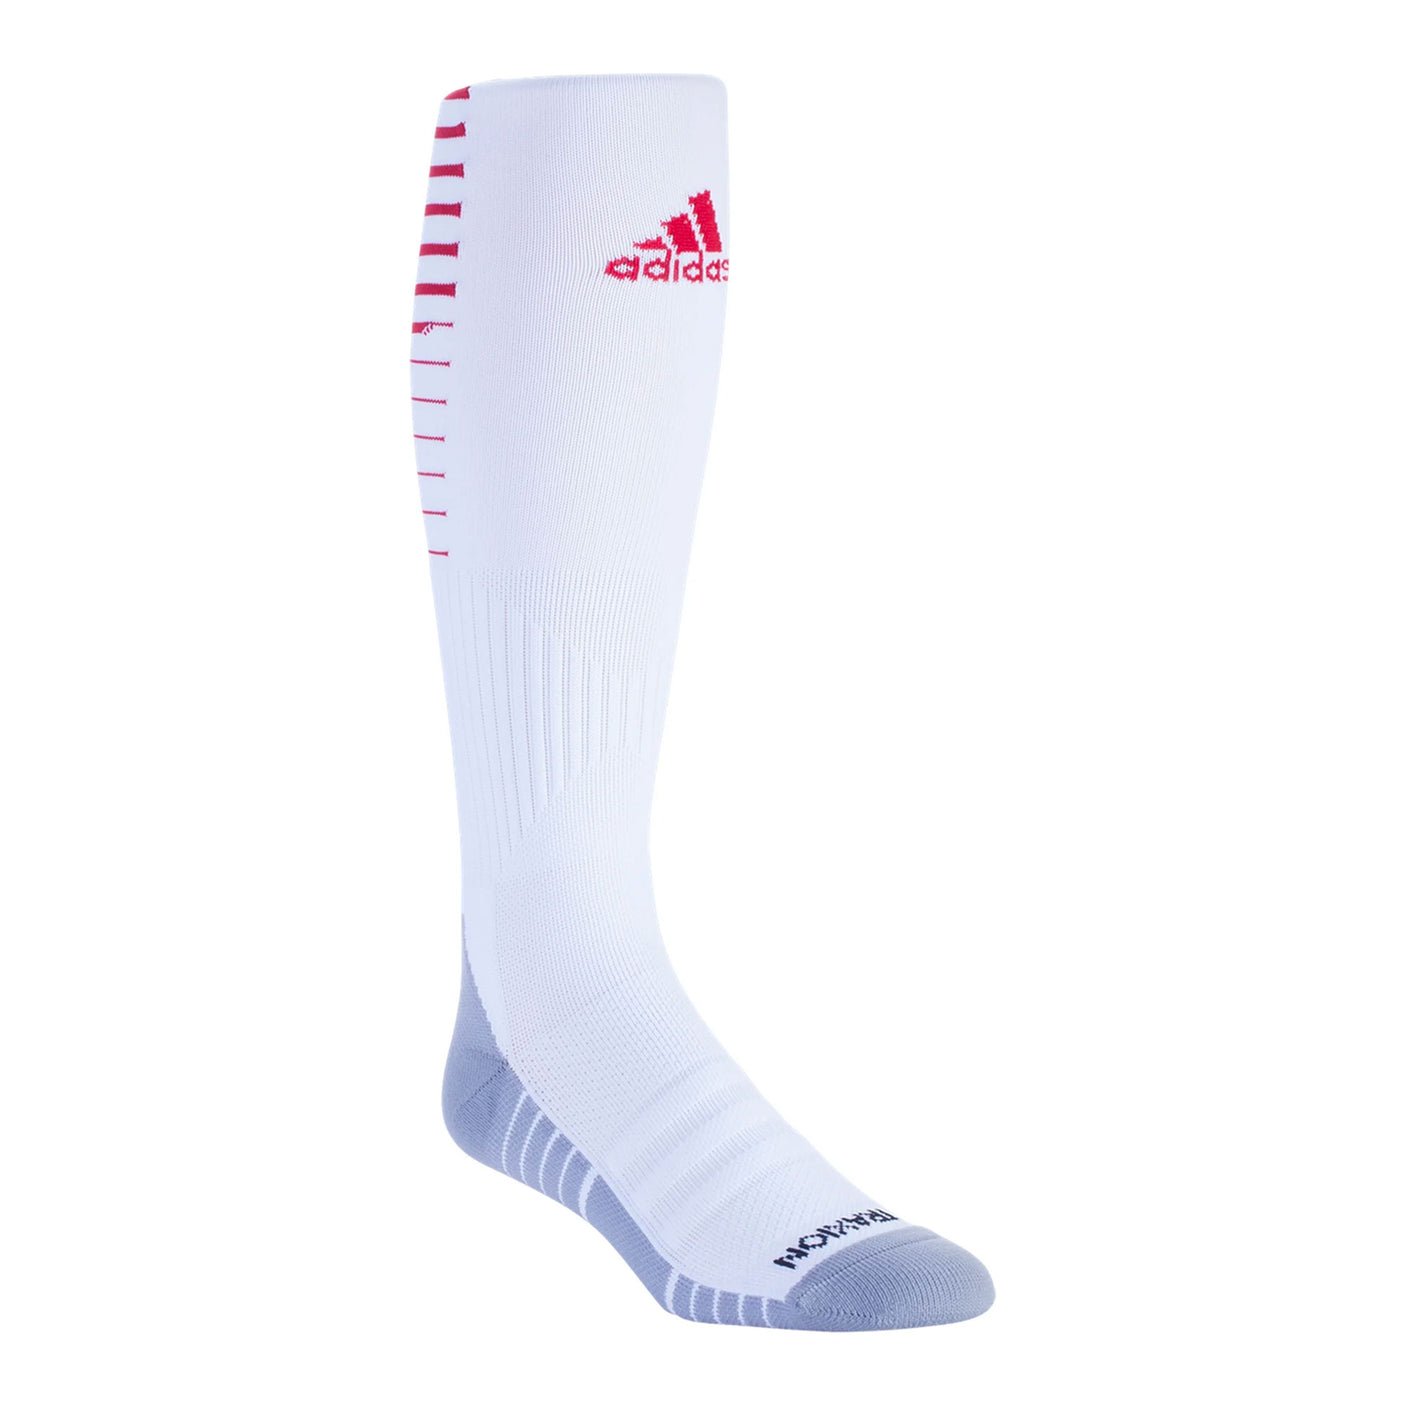 adidas Men's Team Speed II Soccer Socks White/Red Front